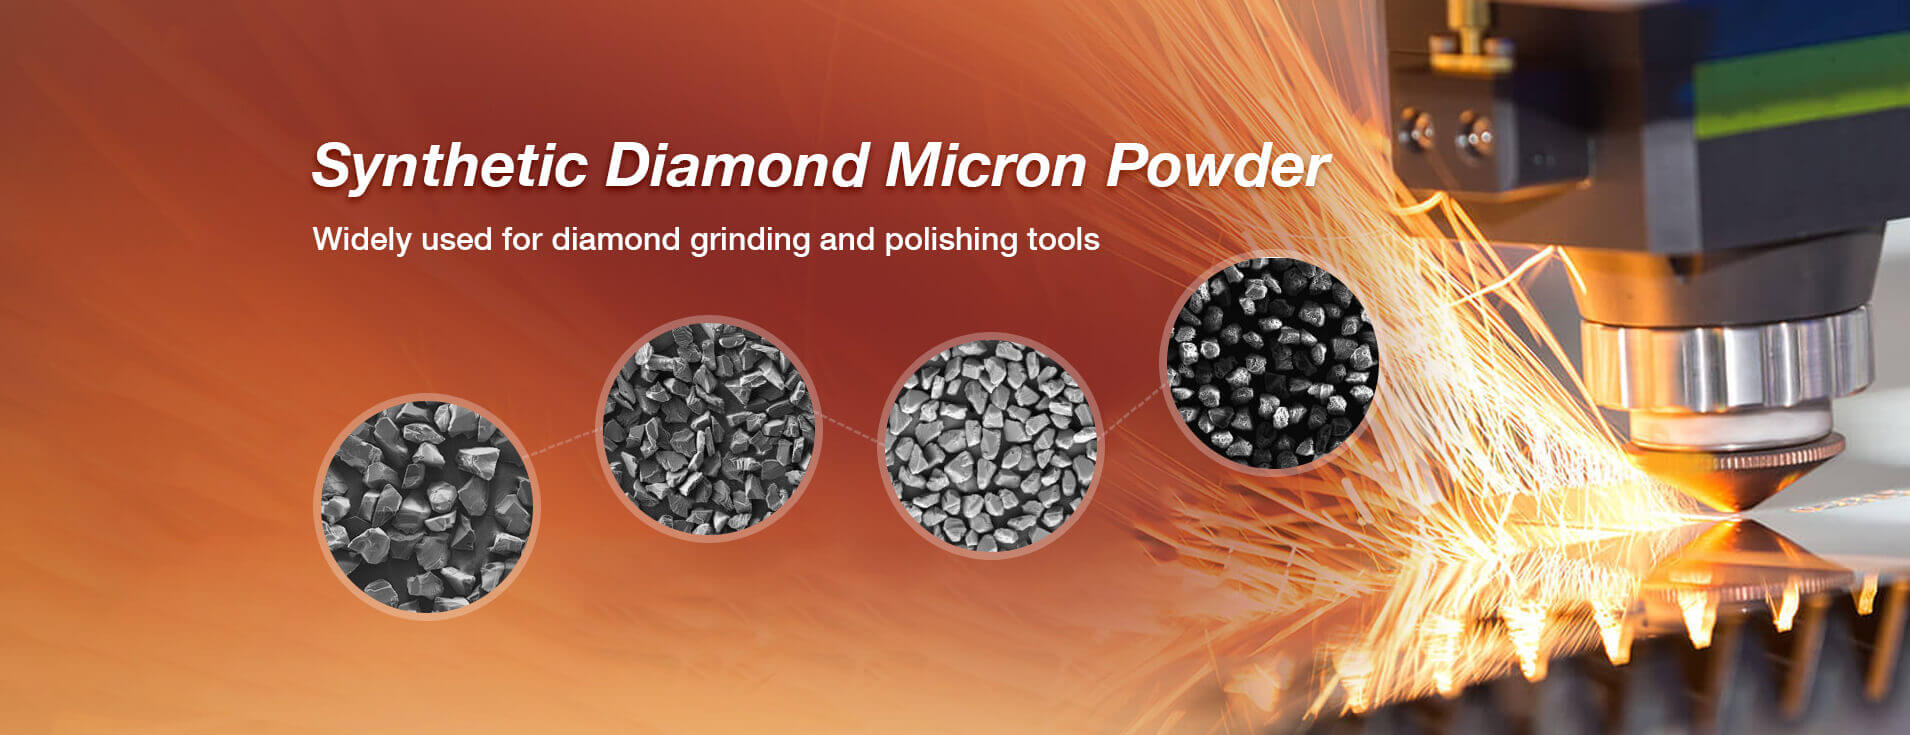 synthetic diamond micron powder 